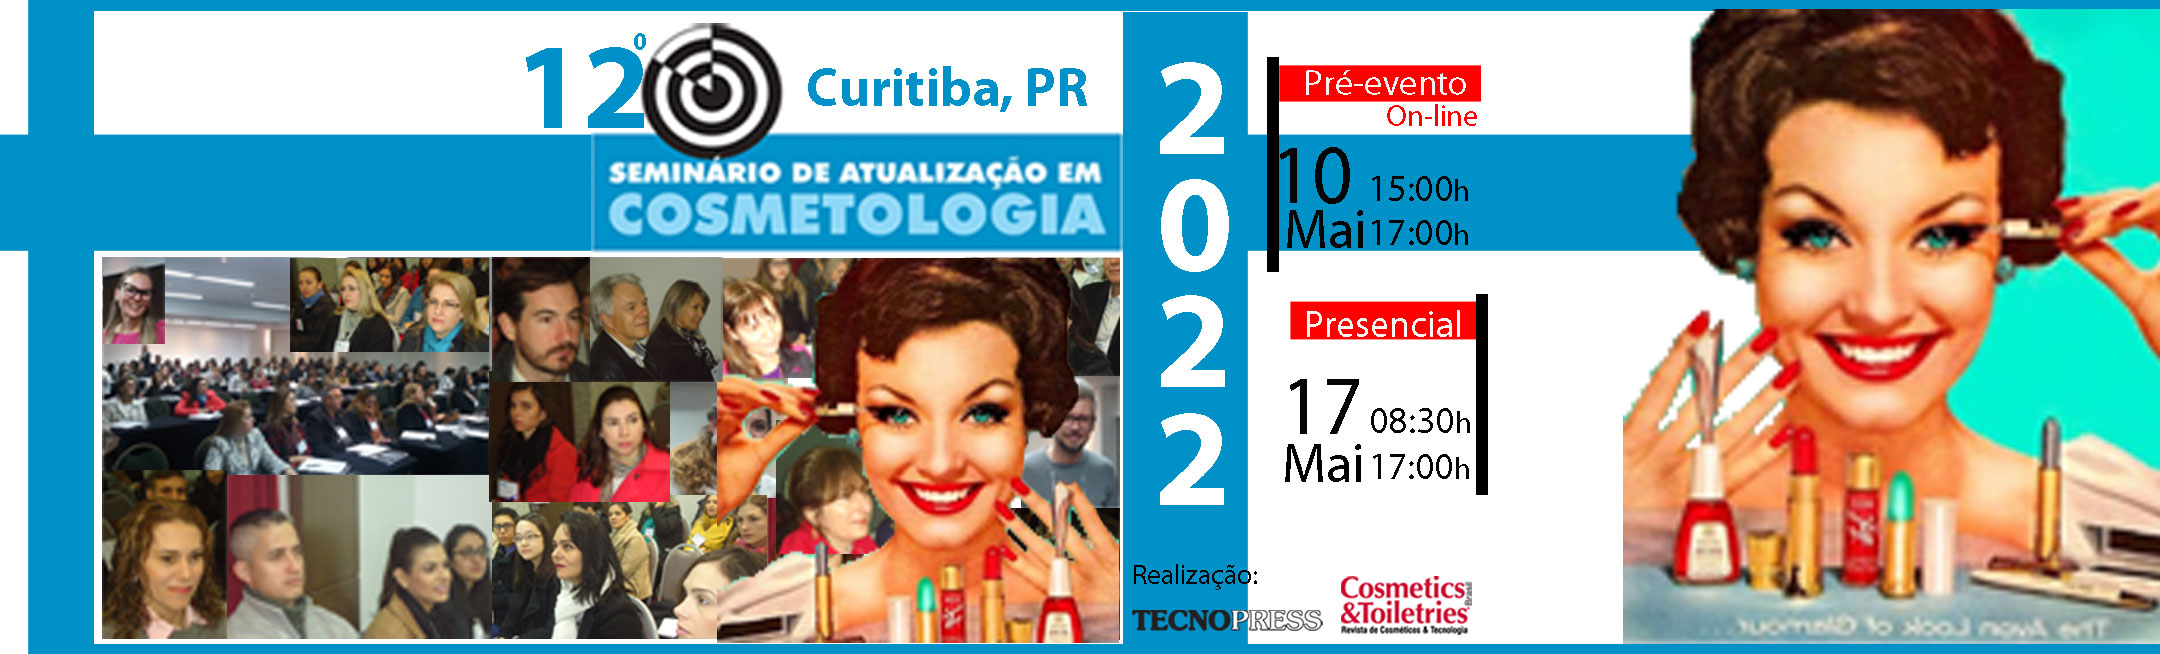 12º Seminário de Atualização em Cosmetologia de Curitiba